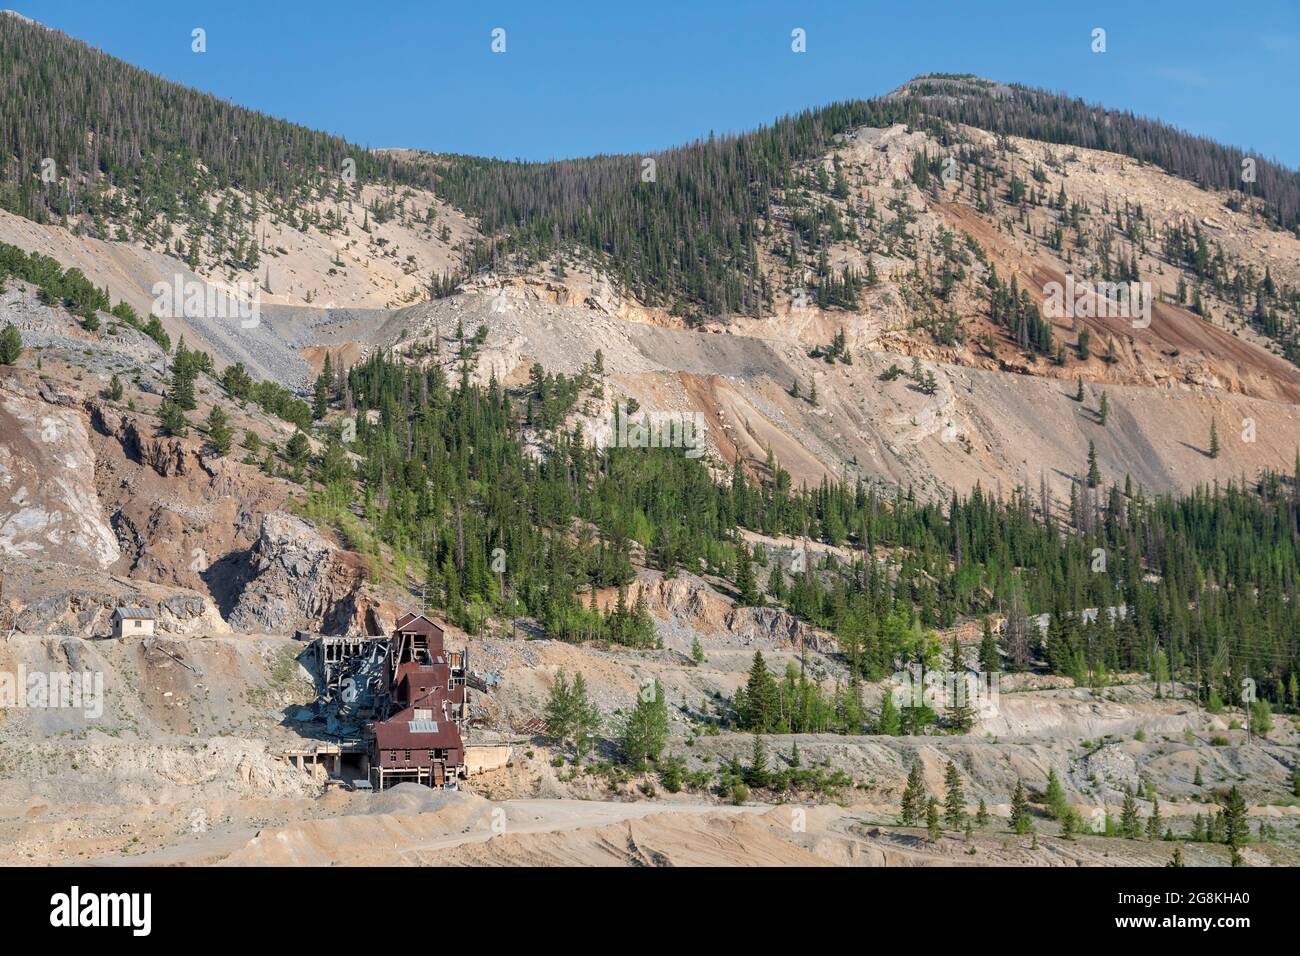 Monarch, Colorado - Alte Bergbaugebäude unterhalb des Monarach Ridge und der kontinentalen Kluft im Süden Colorados. Stockfoto